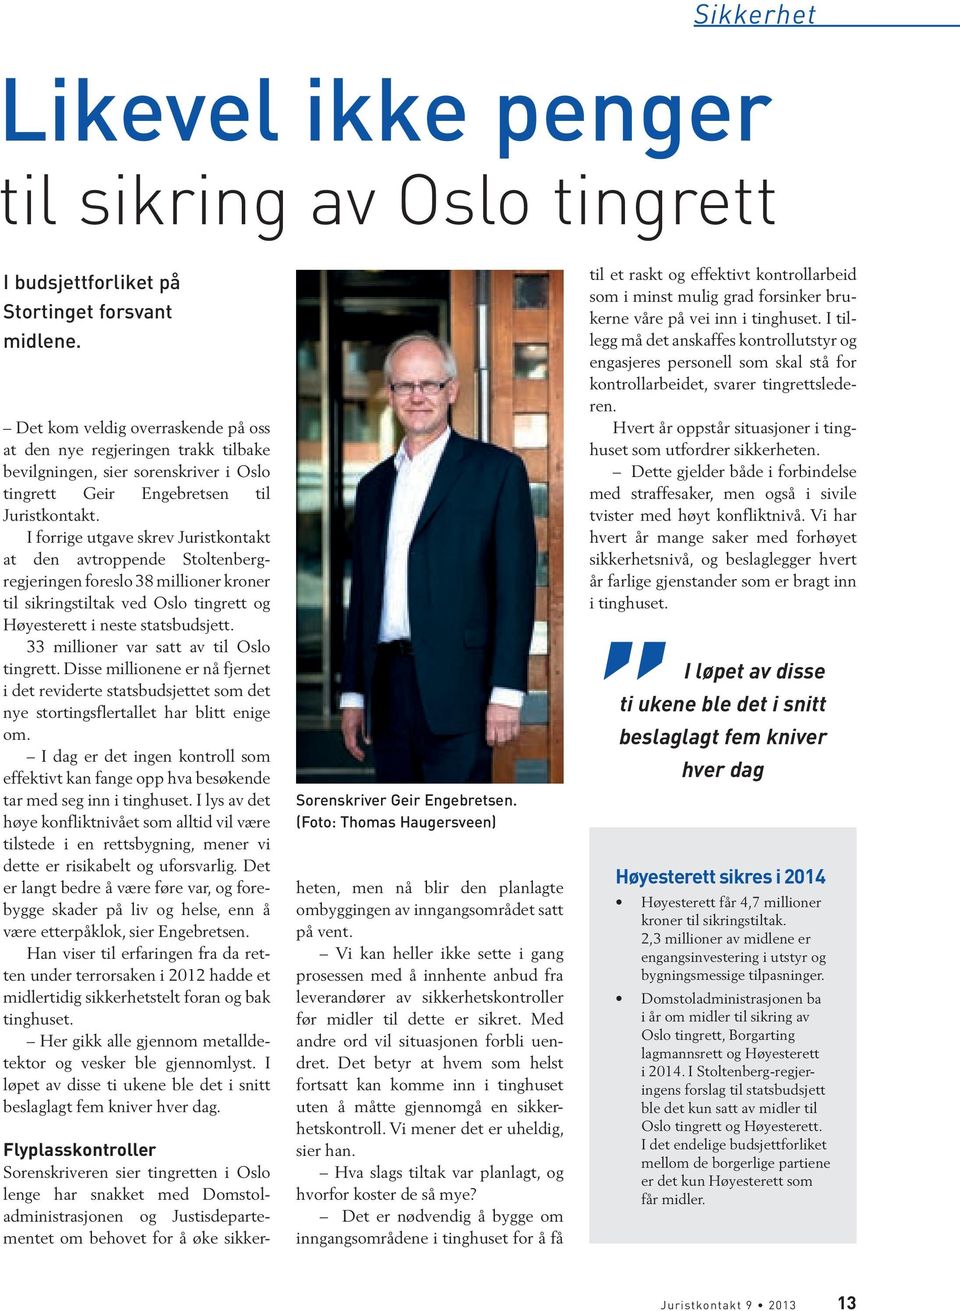 I forrige utgave skrev Juristkontakt at den avtroppende Stoltenbergregjeringen foreslo 38 millioner kroner til sikringstiltak ved Oslo tingrett og Høyesterett i neste statsbudsjett.